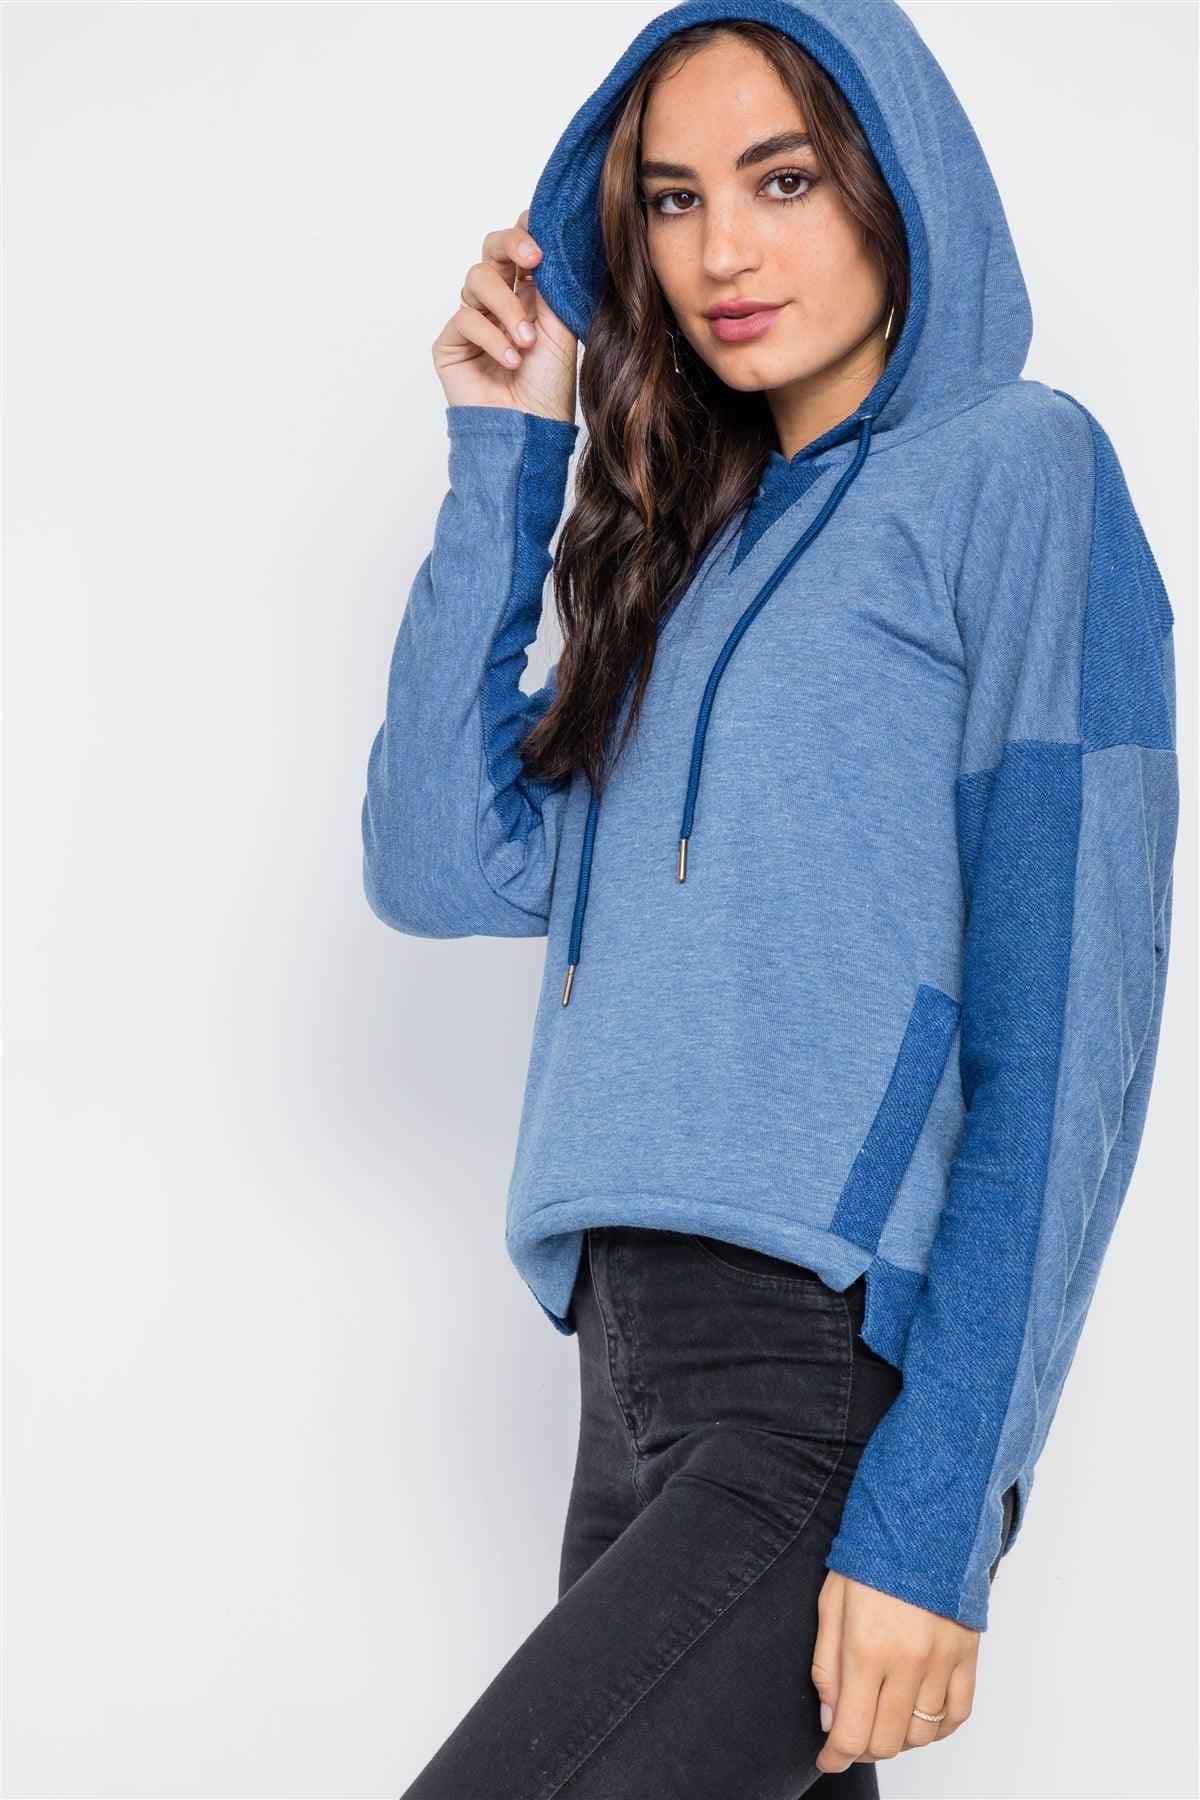 Blue Contrast Long Sleeves Hoodie Sweater /2-2-2